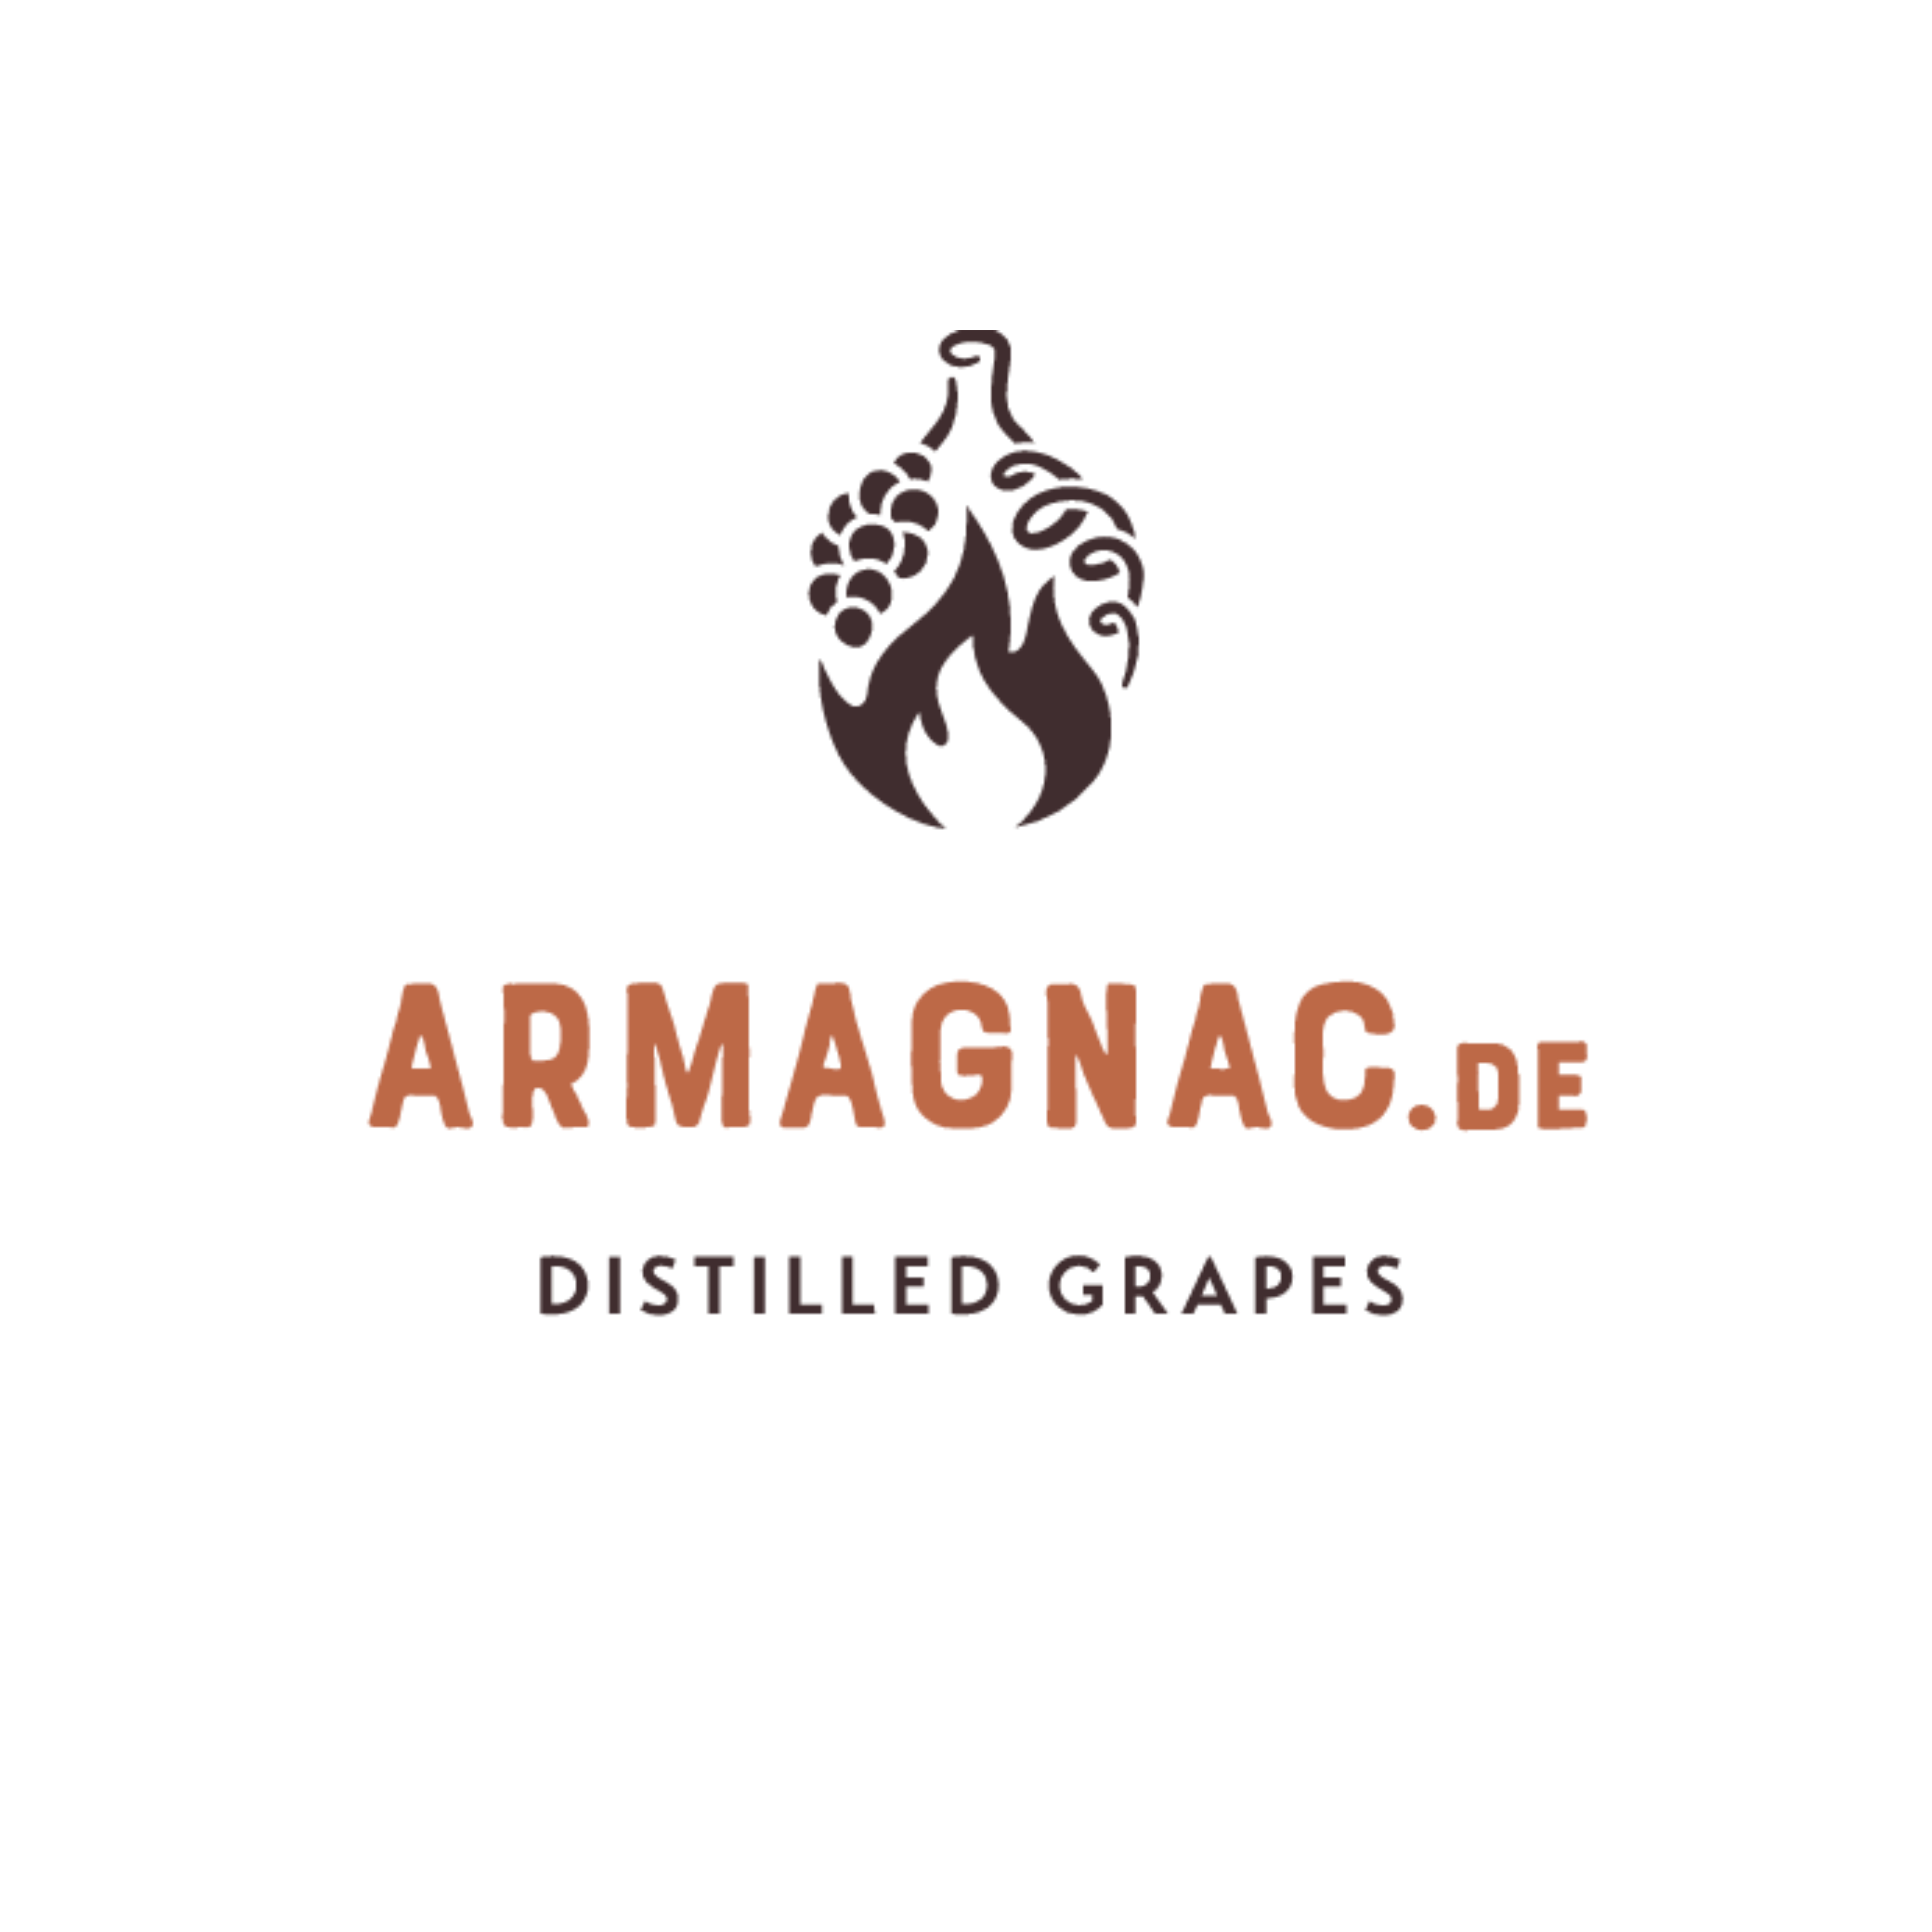 Armagnac.de